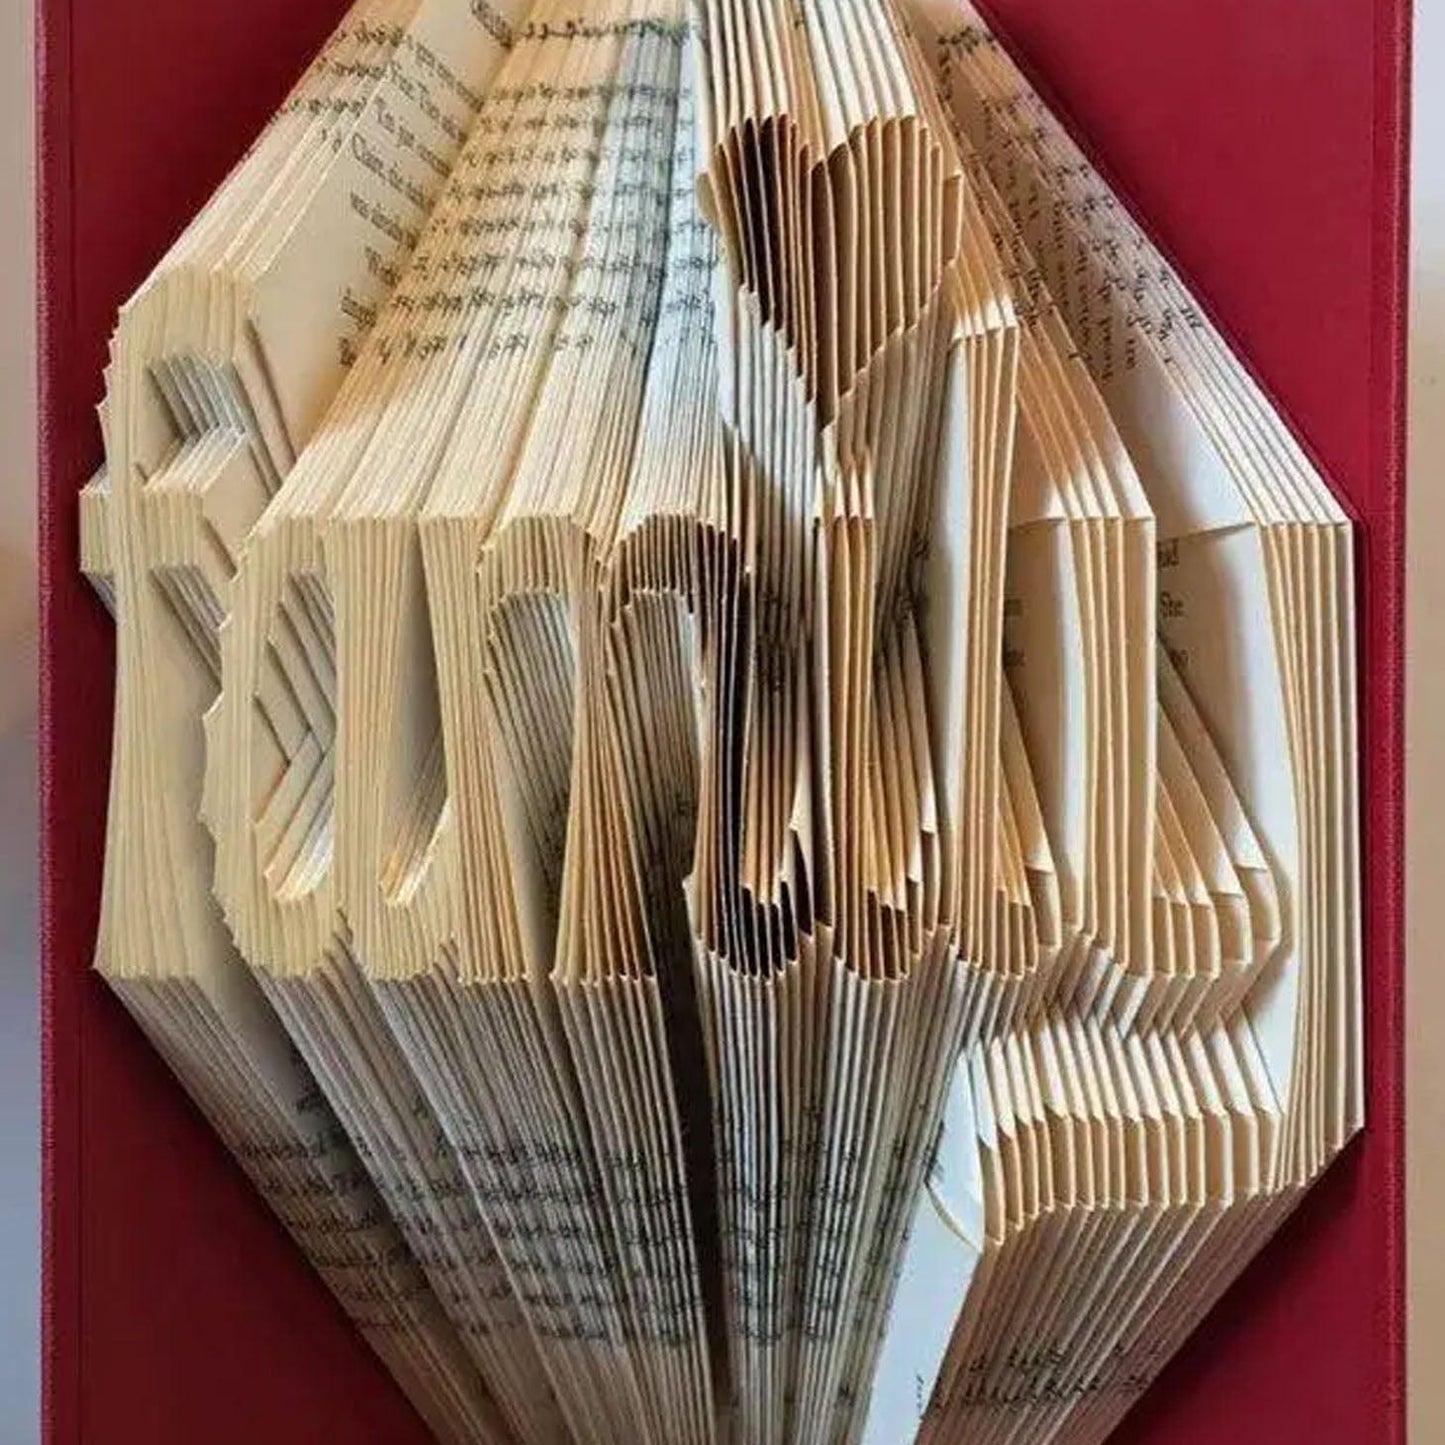 Folded Book Art - Family